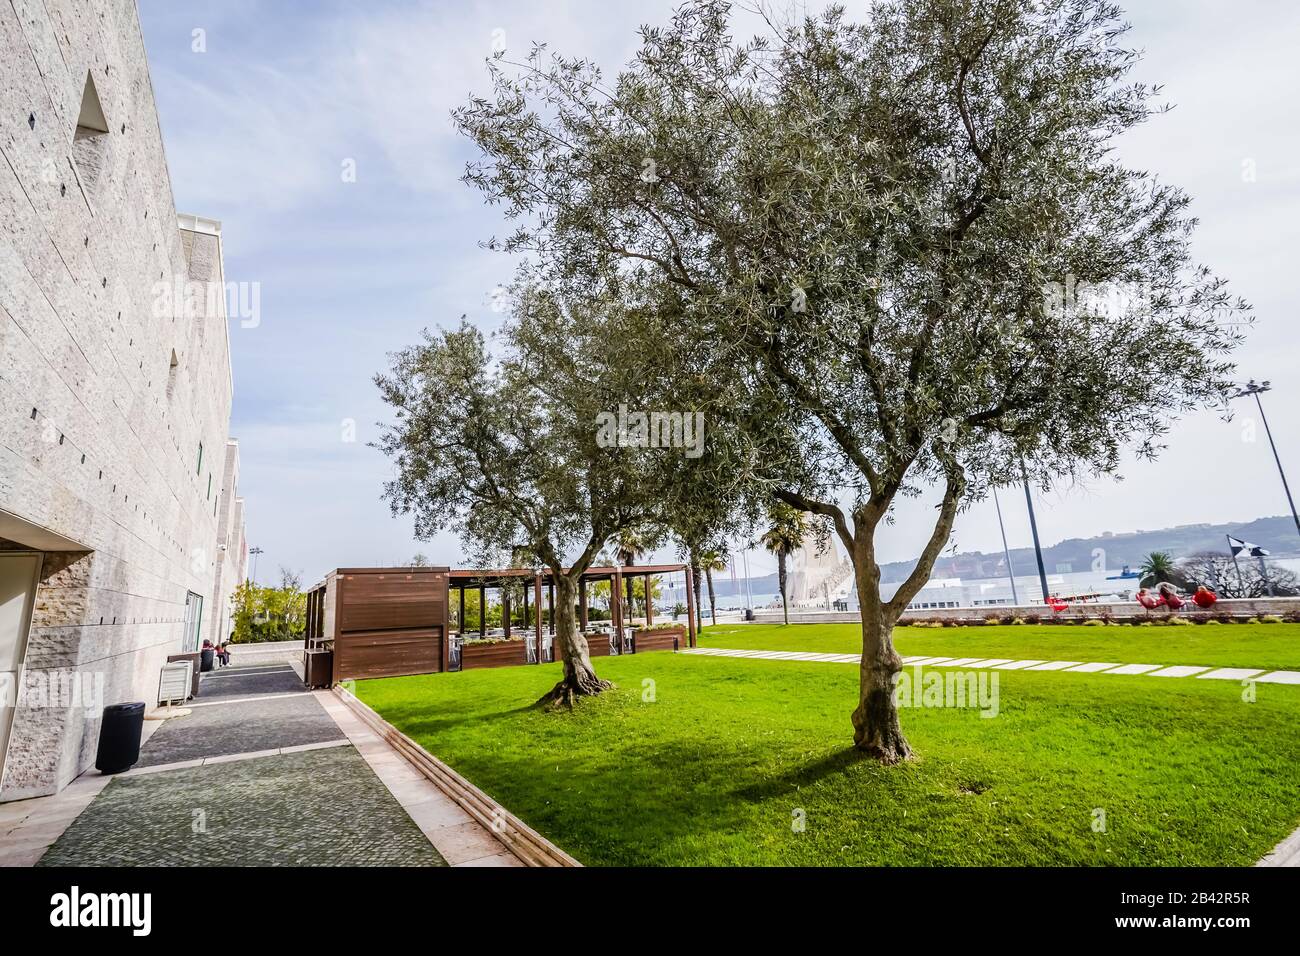 Das Centro Cultural de Belém ist ein renommiertes Kulturzentrum in Lissabon Portugal Stockfoto